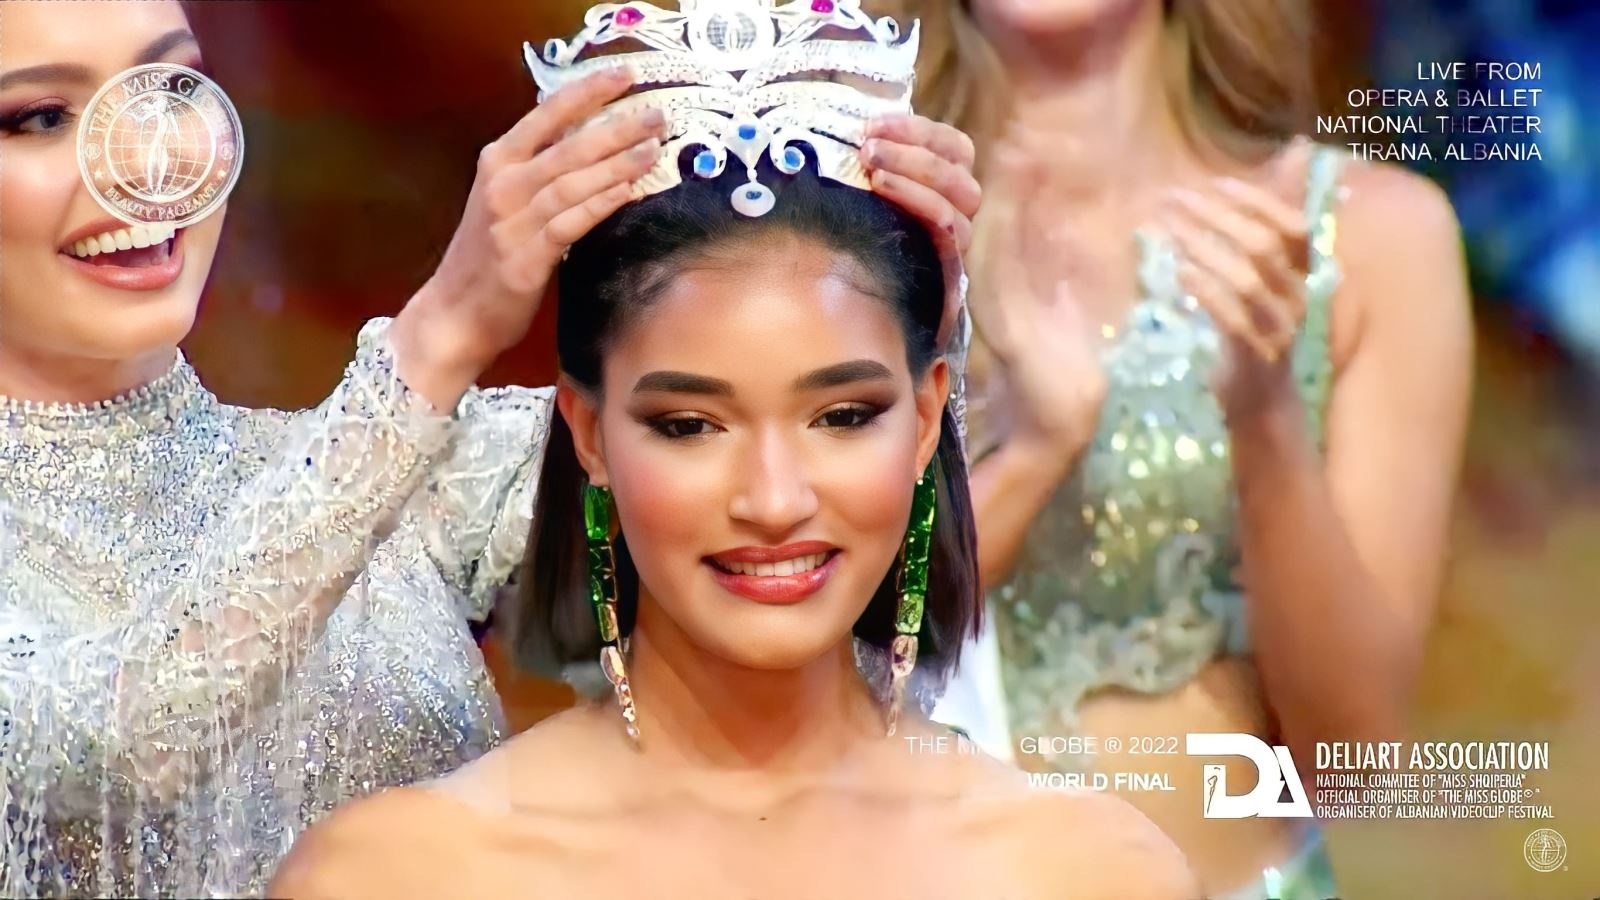 Hoa hậu Hoàn cầu: Cuộc thi sắc đẹp có lịch sử lâu đời với 3 phiên bản đặc biệt - Ảnh 2.